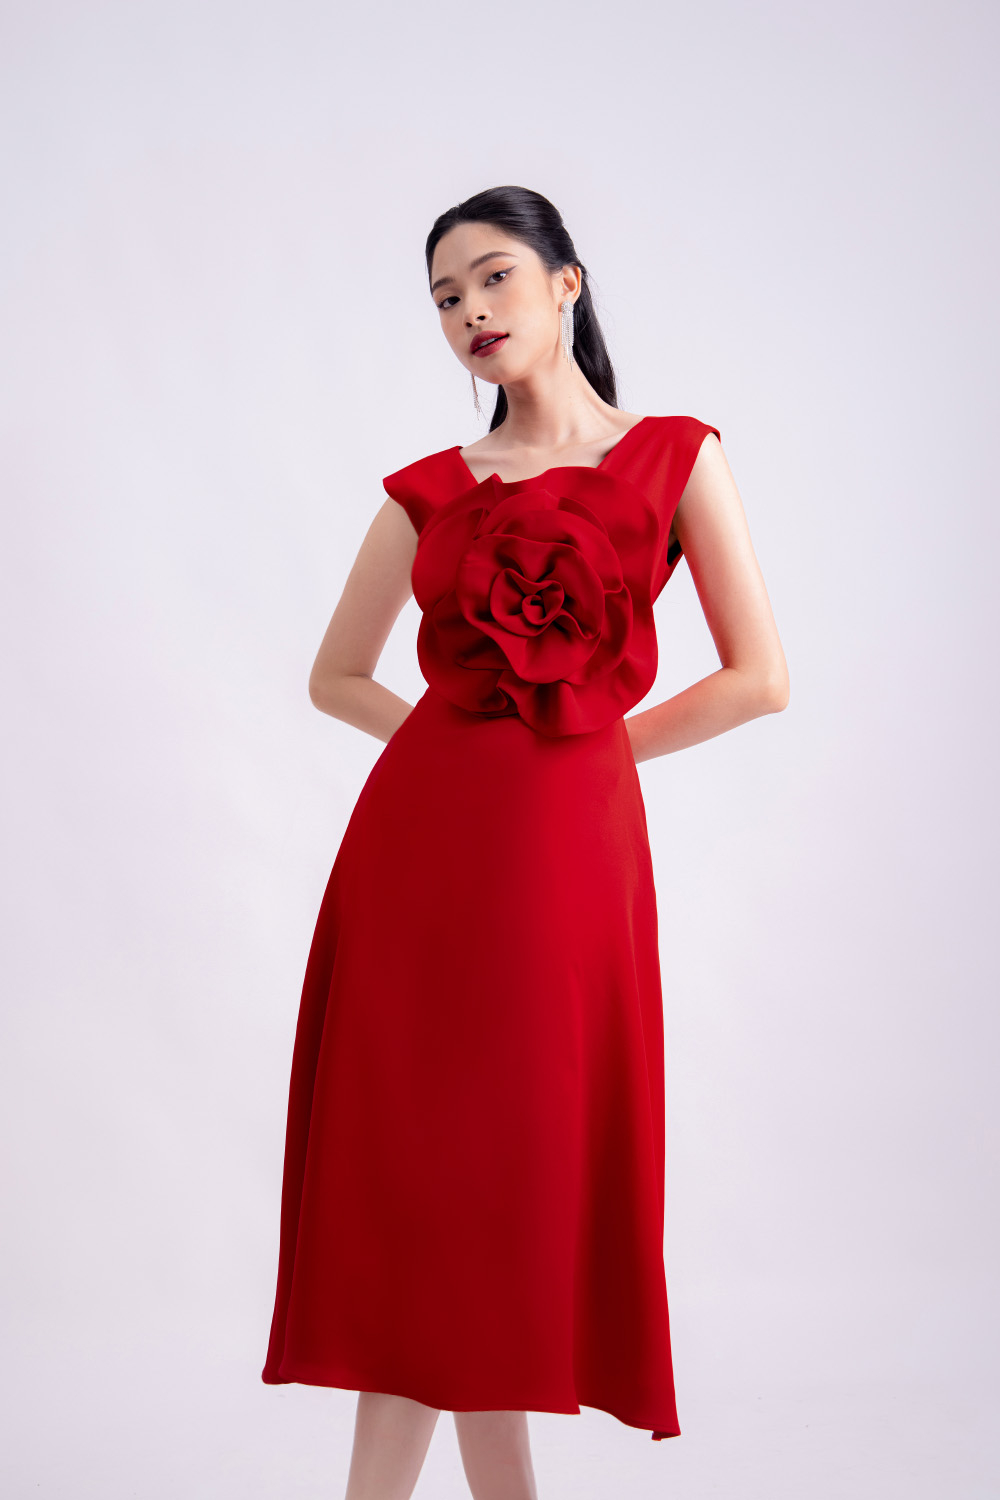 Váy Maxi hai dây hở vai hoa nhí màu đỏ V688 tại Hải Phòng | Phong cách thời  trang, Váy maxi, Thời trang